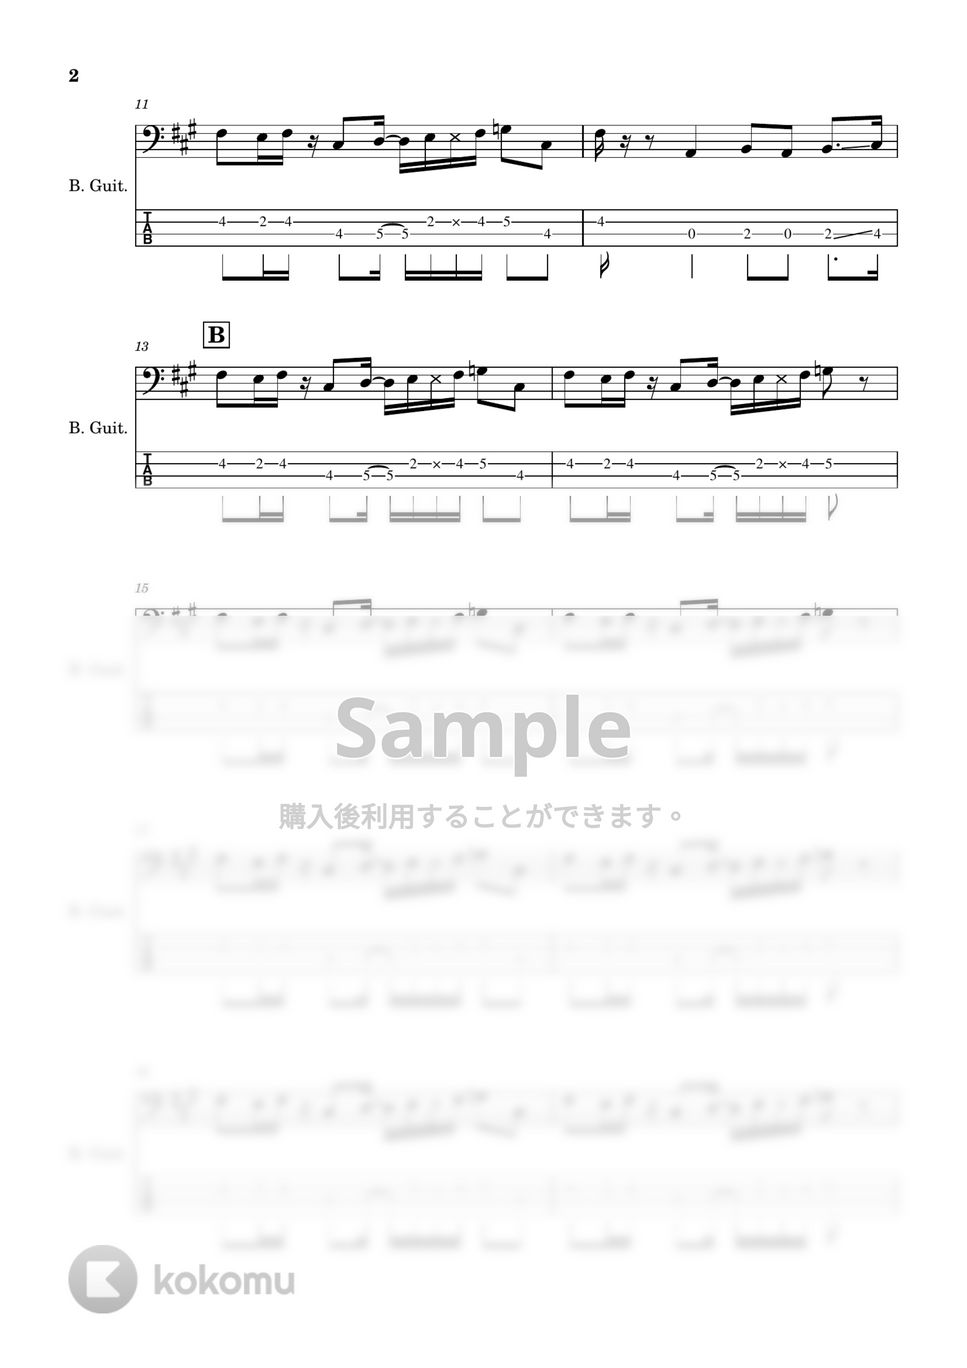 東京事変 - 【ベース楽譜】 電波通信 / 東京事変 - Put Your Antenna Up / Tokyo Incidents 【BassScore】 by Cookie's Drum Score